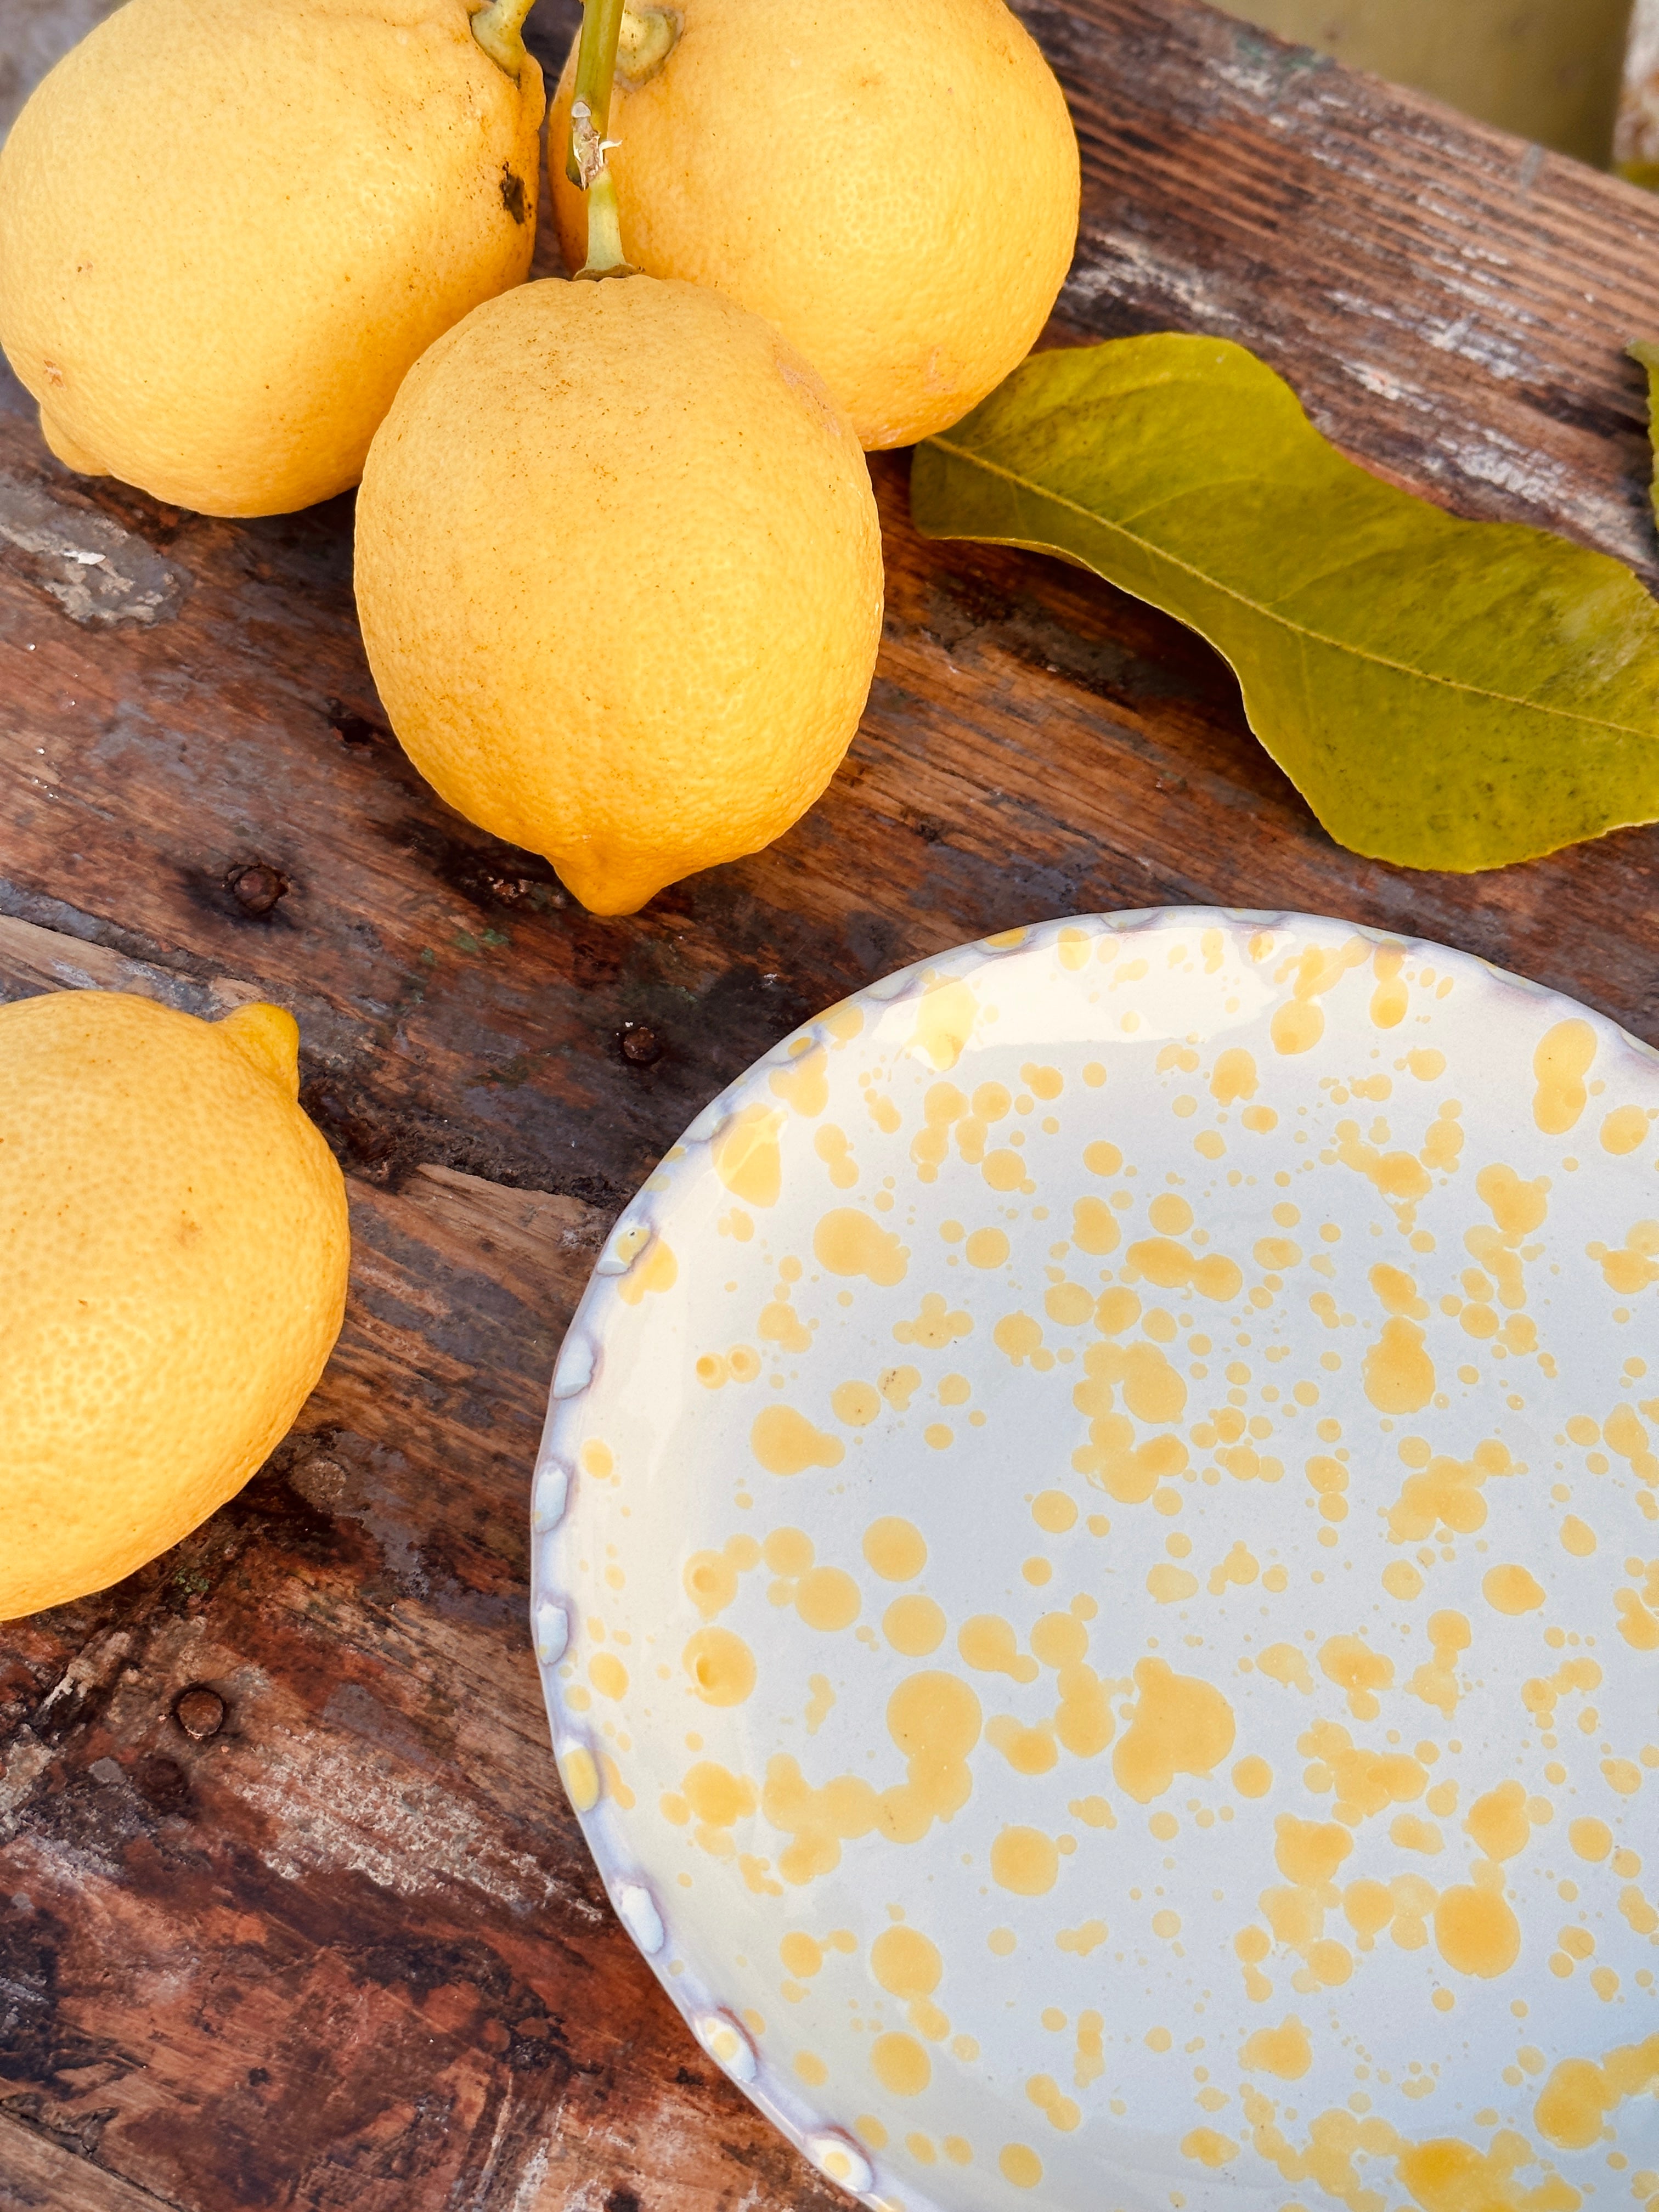 Fruit Plate Schizzato limone